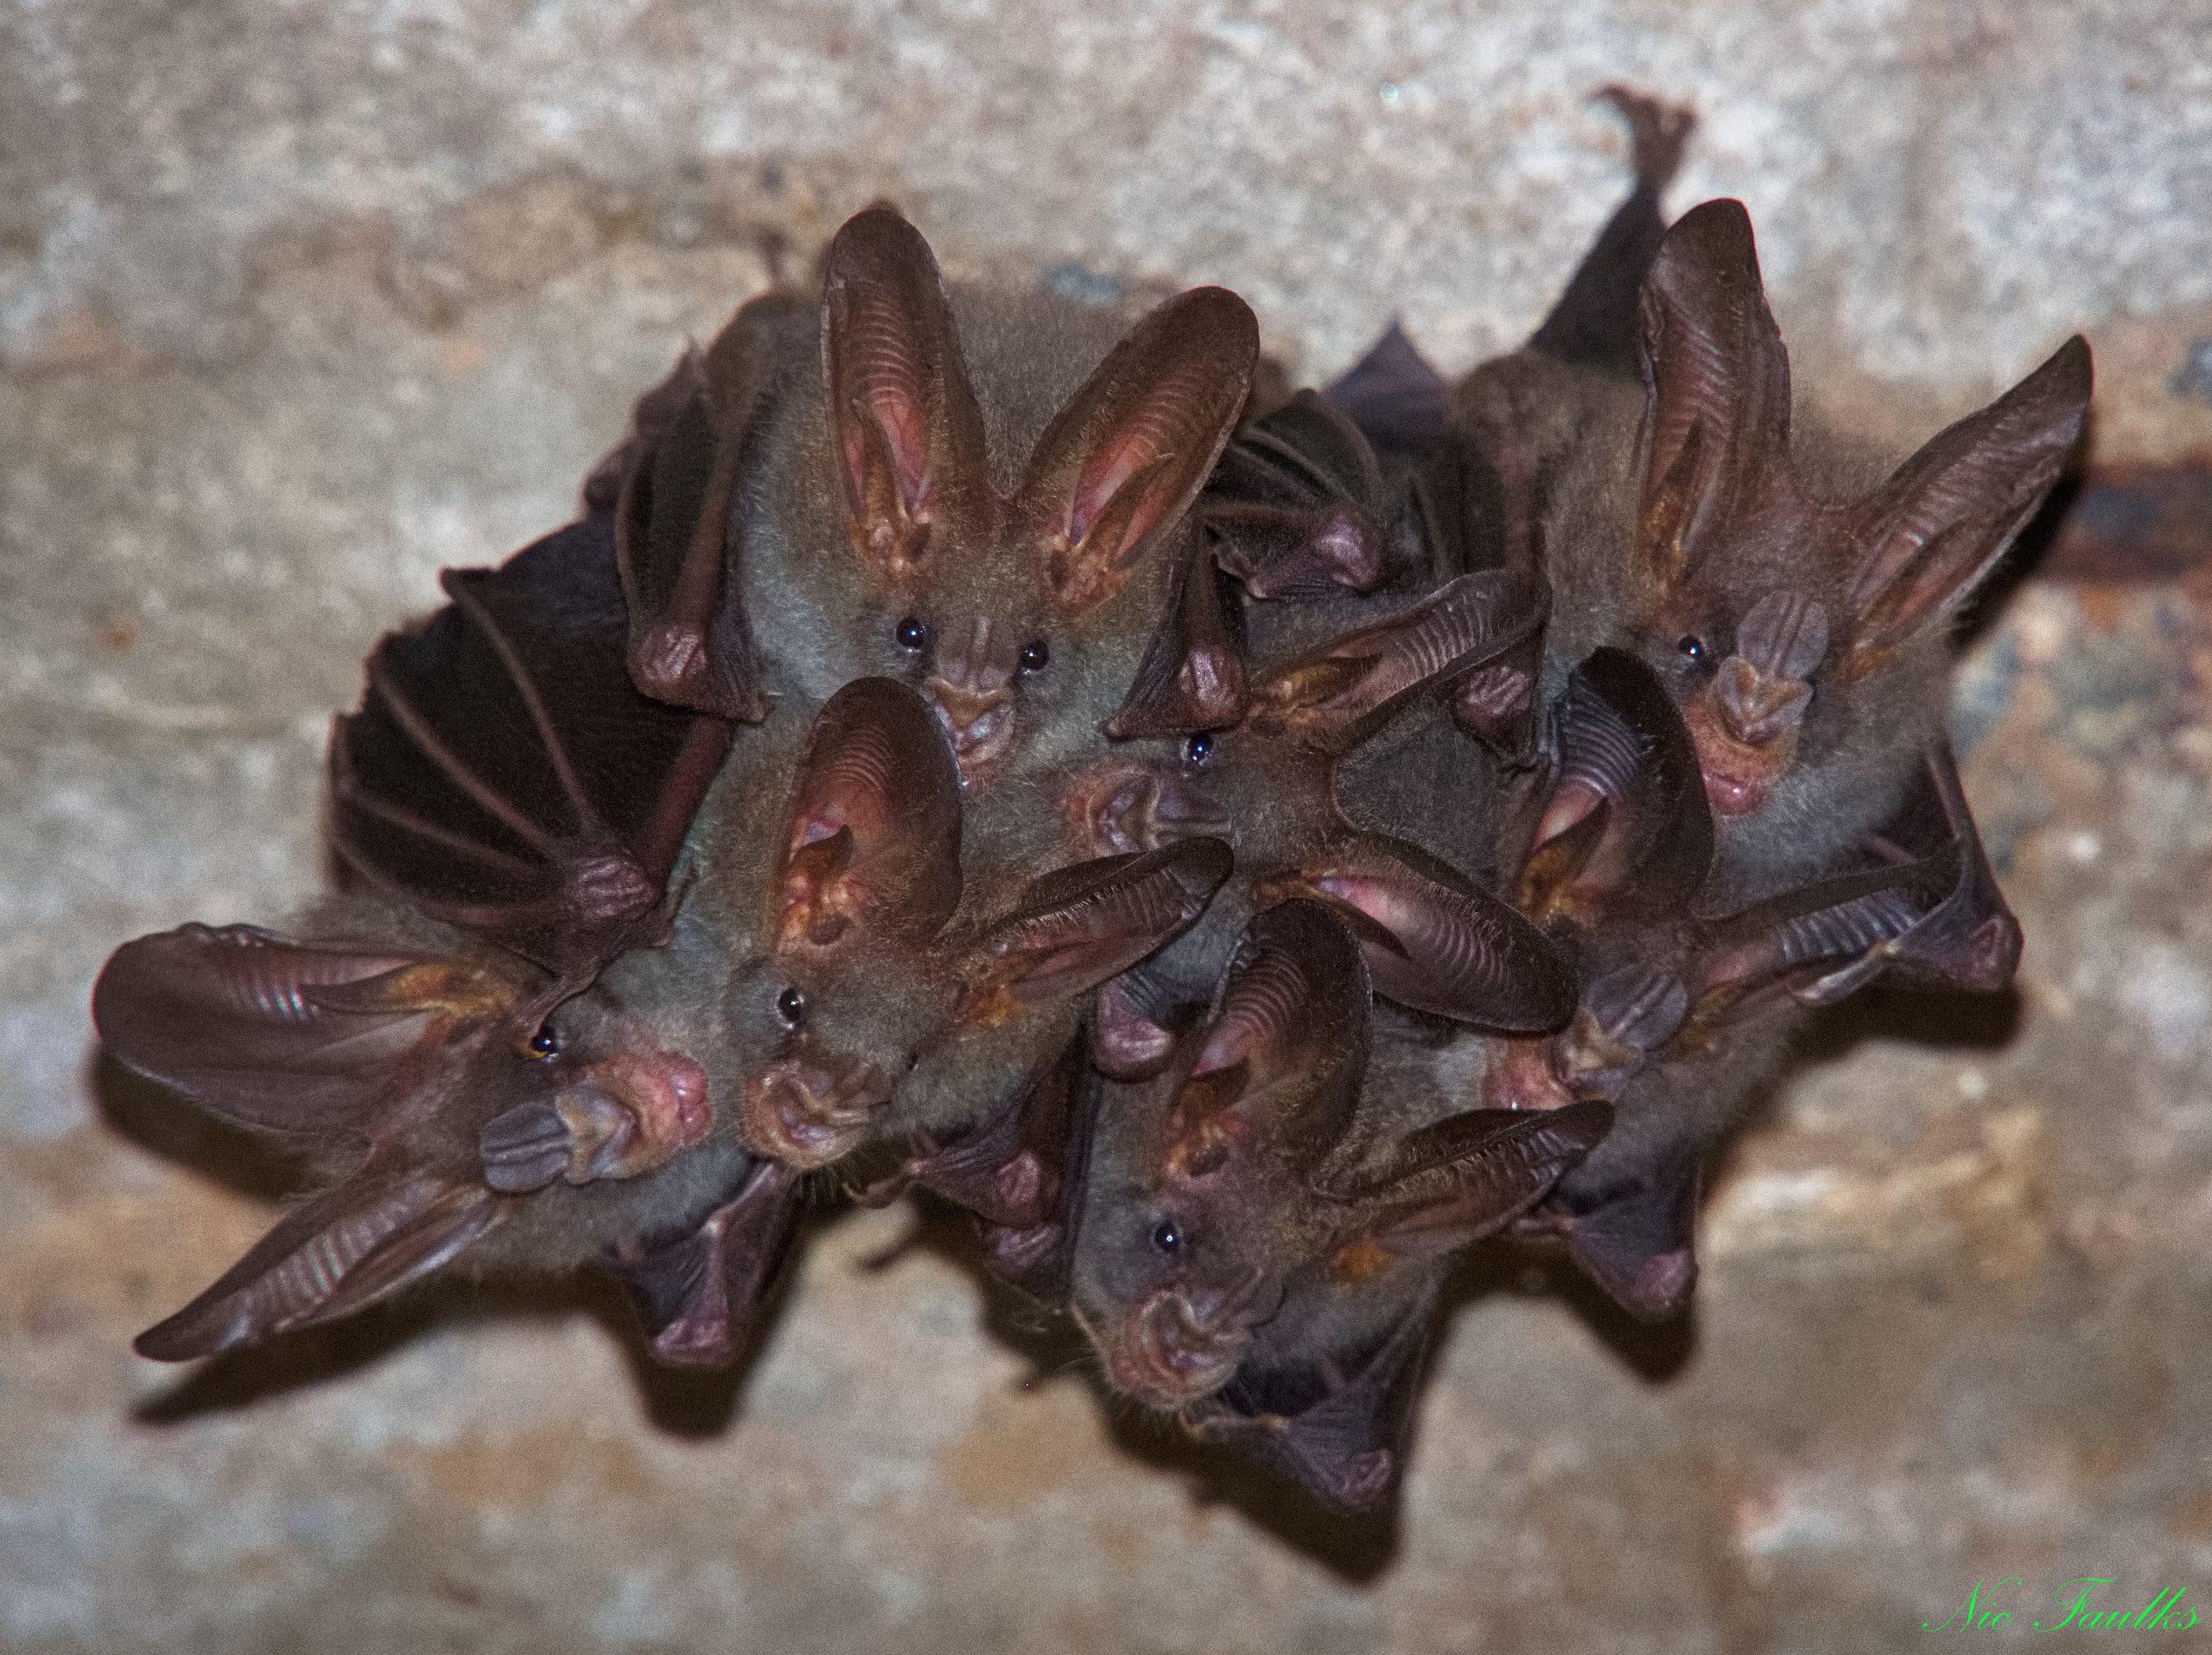 False Vampire Bats